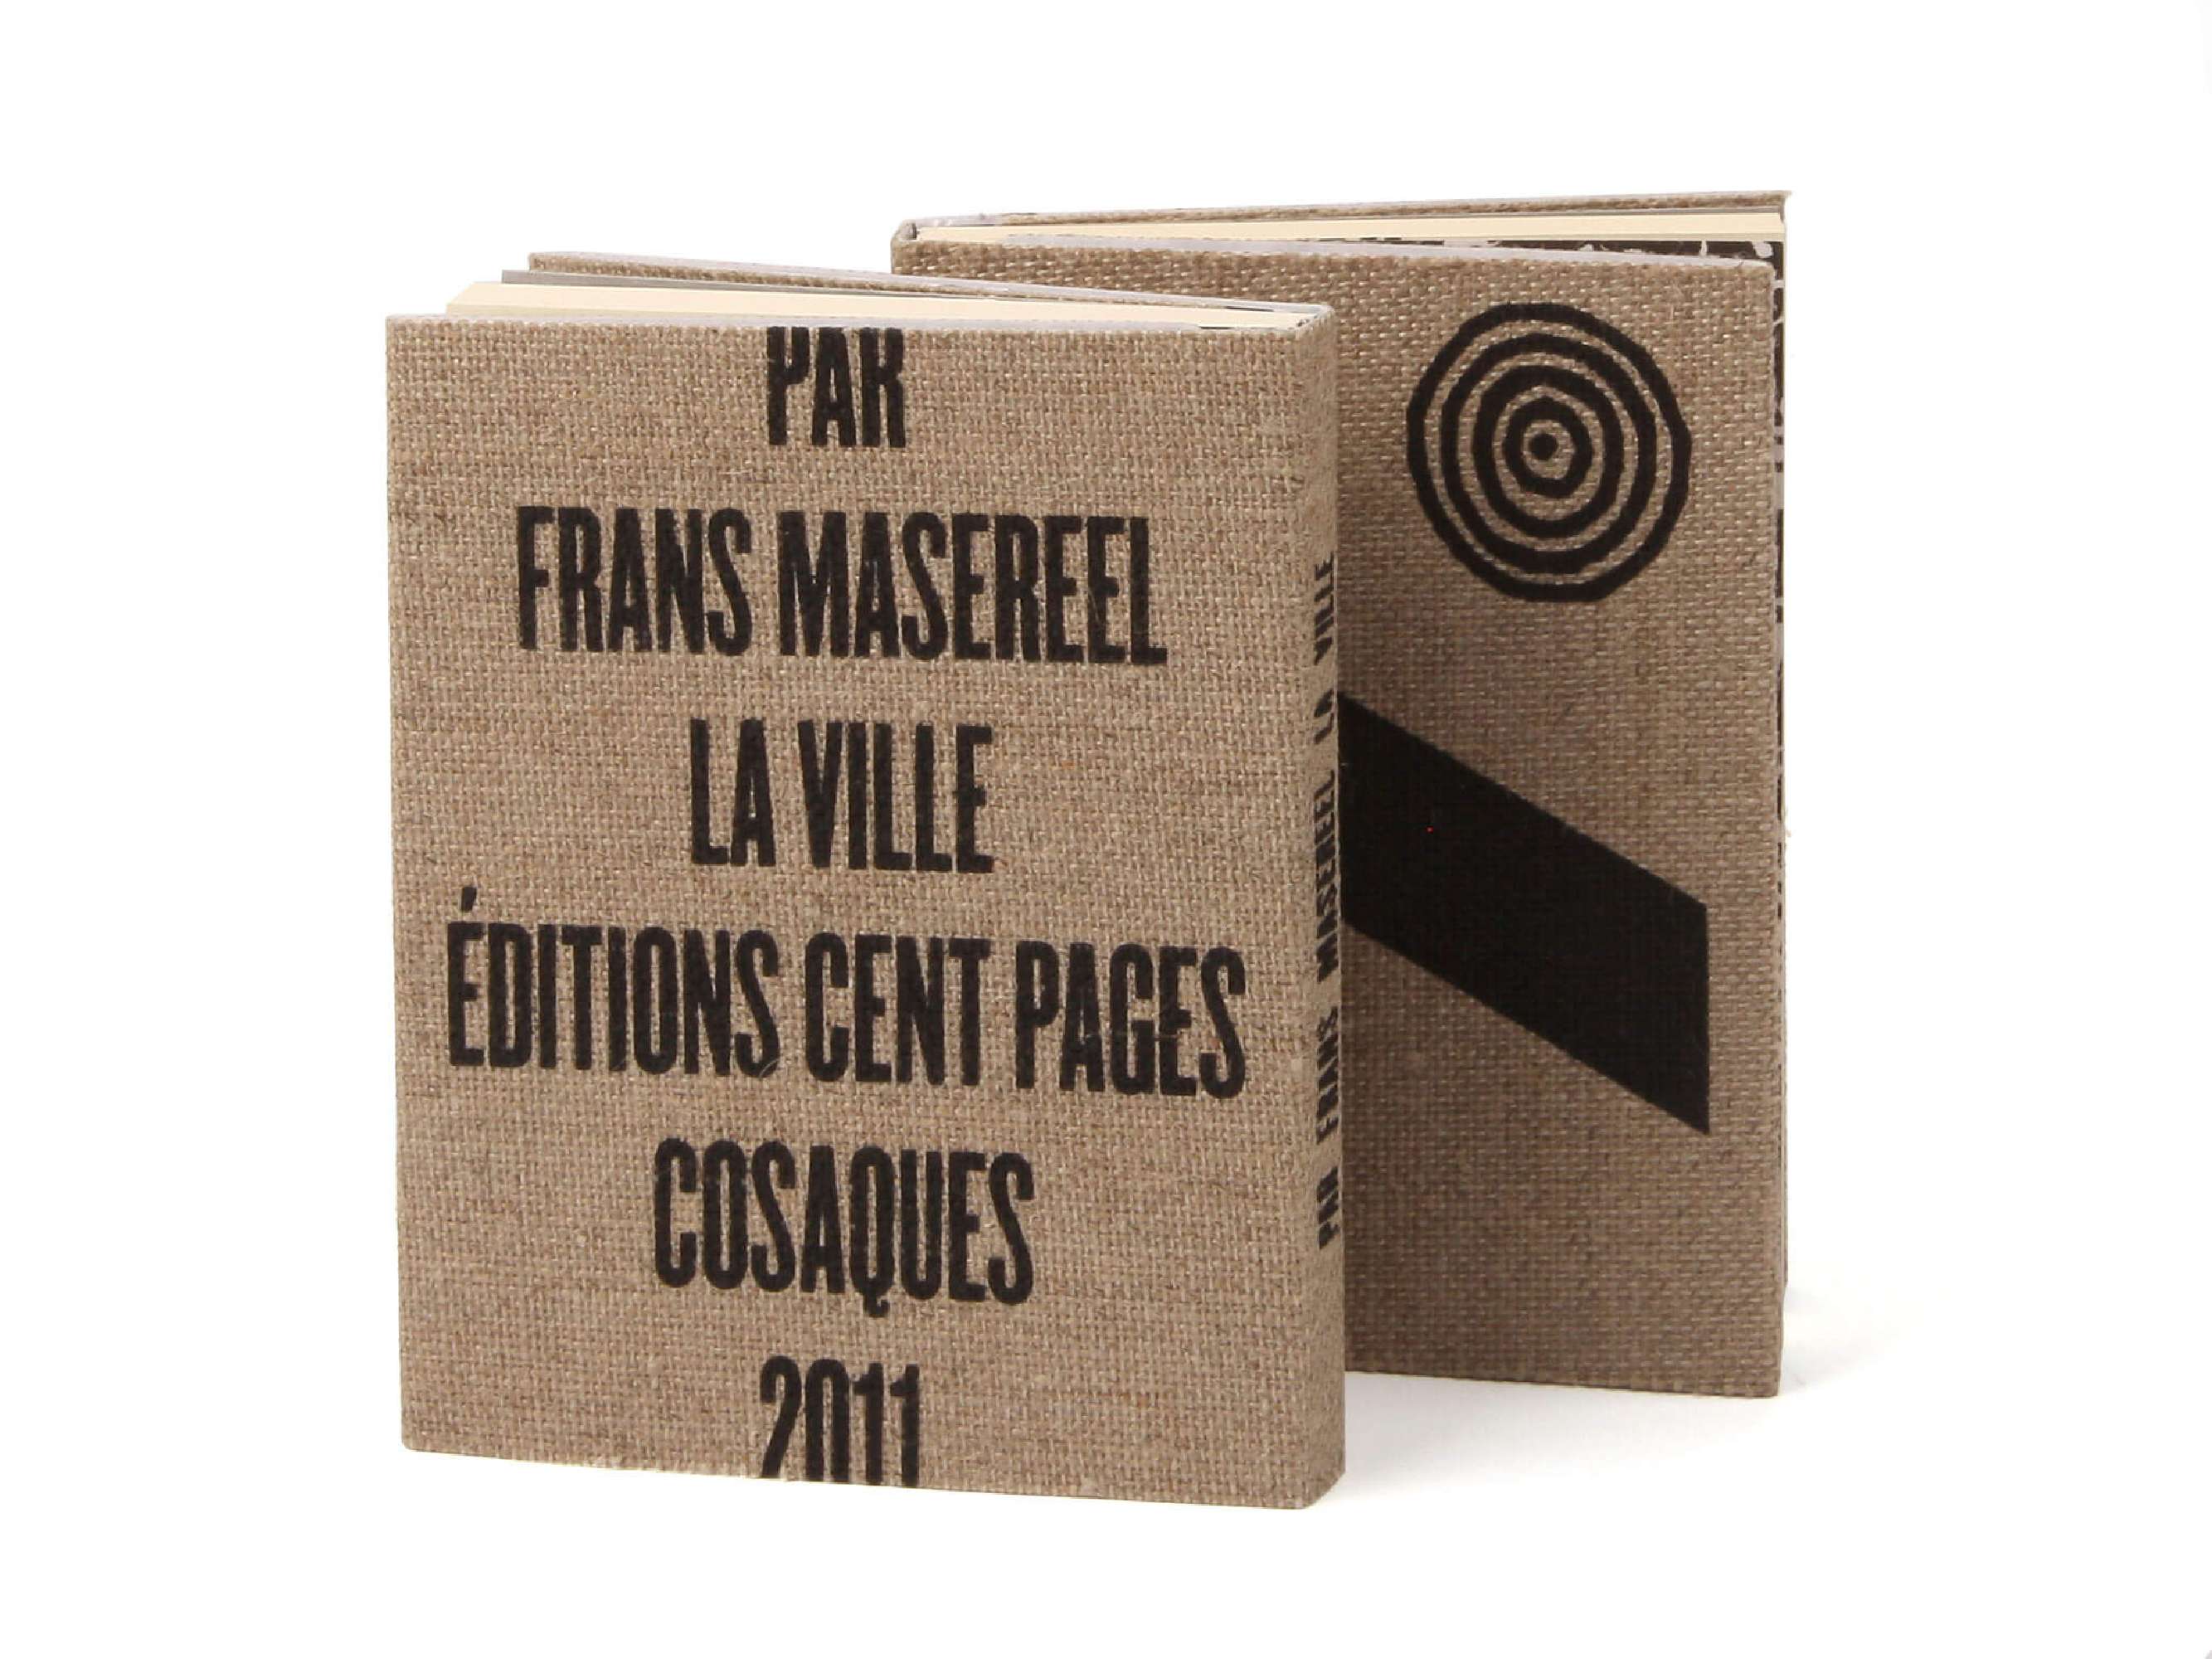 Frans Masereel La Ville Éditions cent pages Collection Cosaques Jaquette sérigraphie sur toile bois gravé